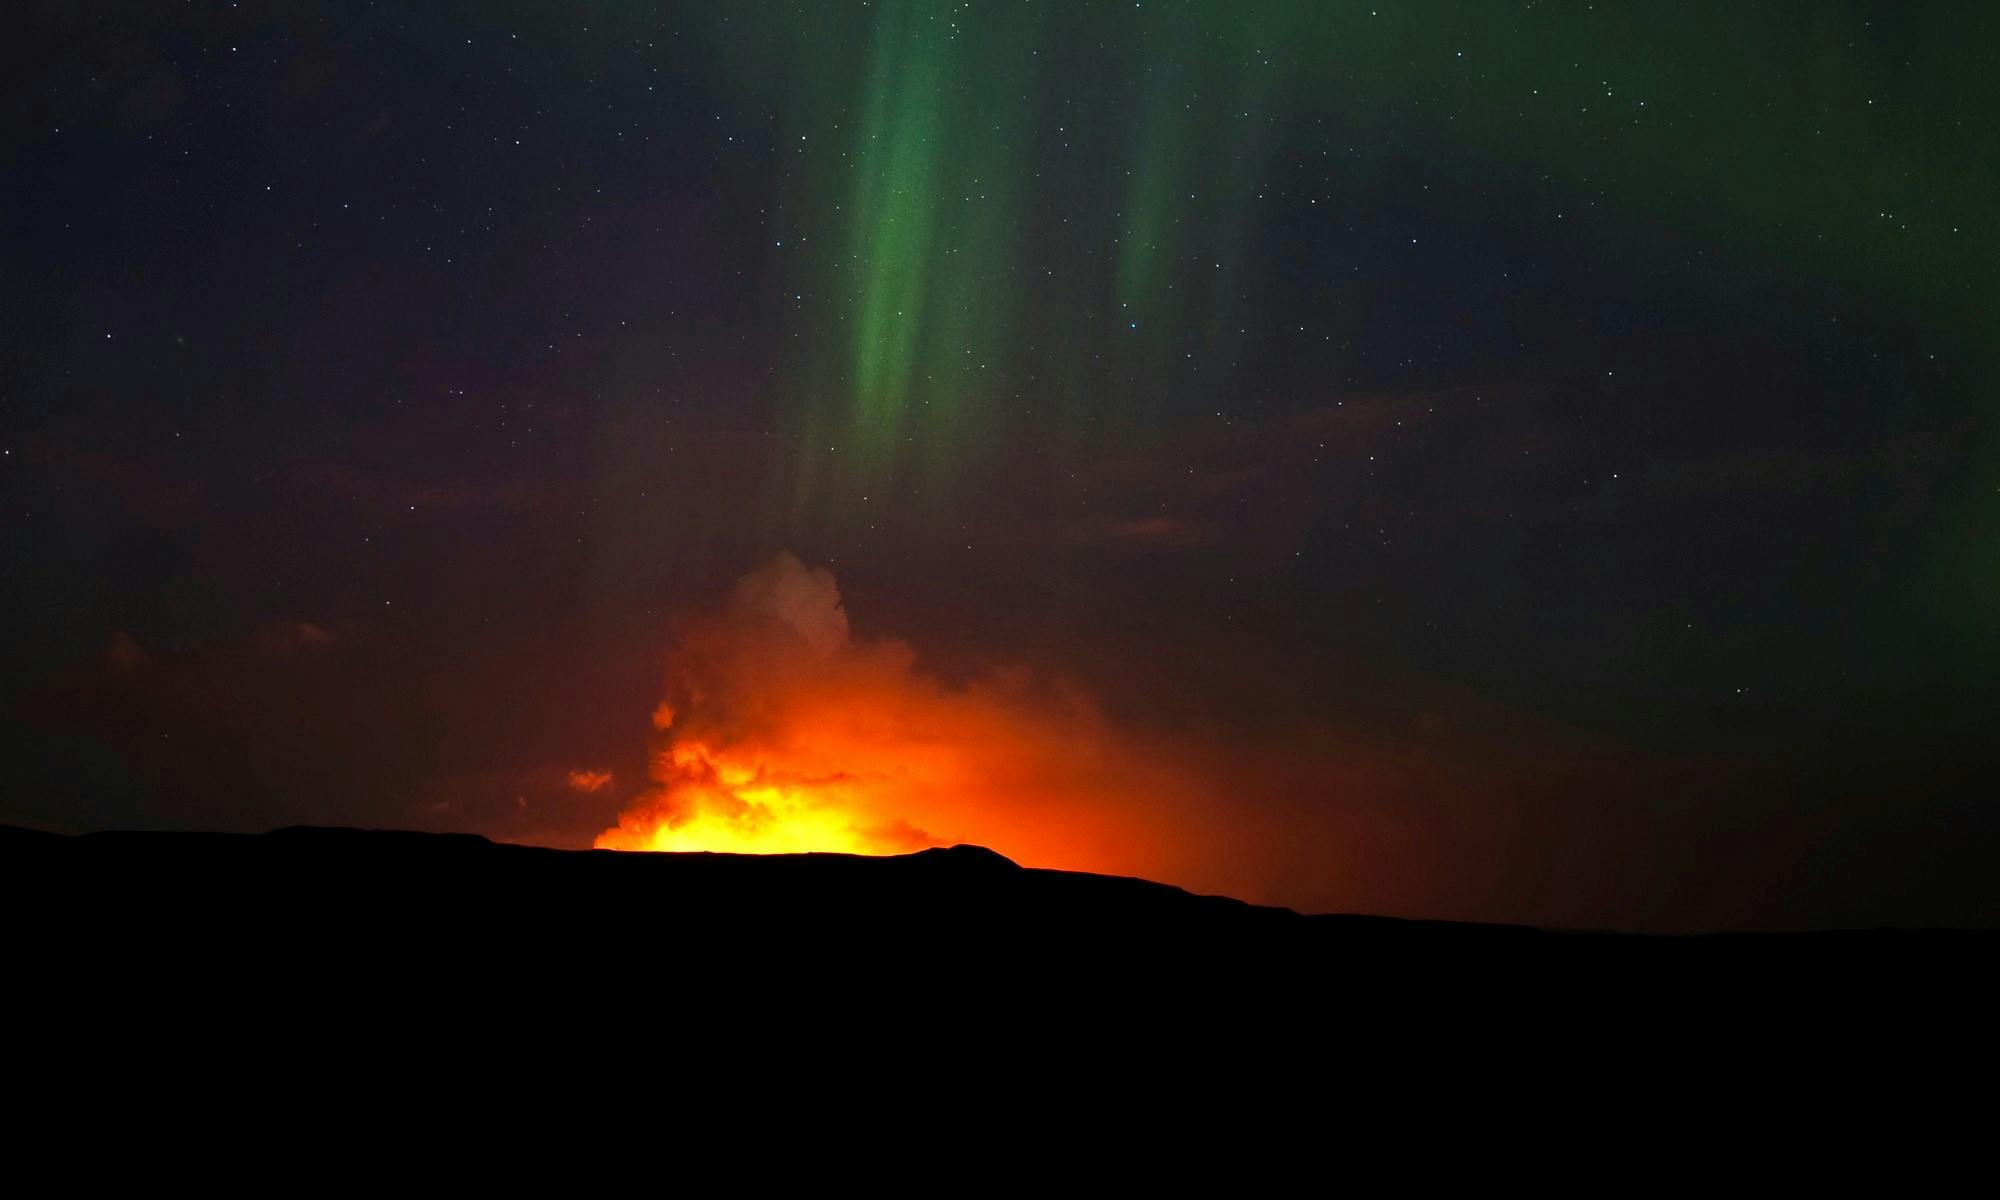 Eruption at Eyjafjallajökull